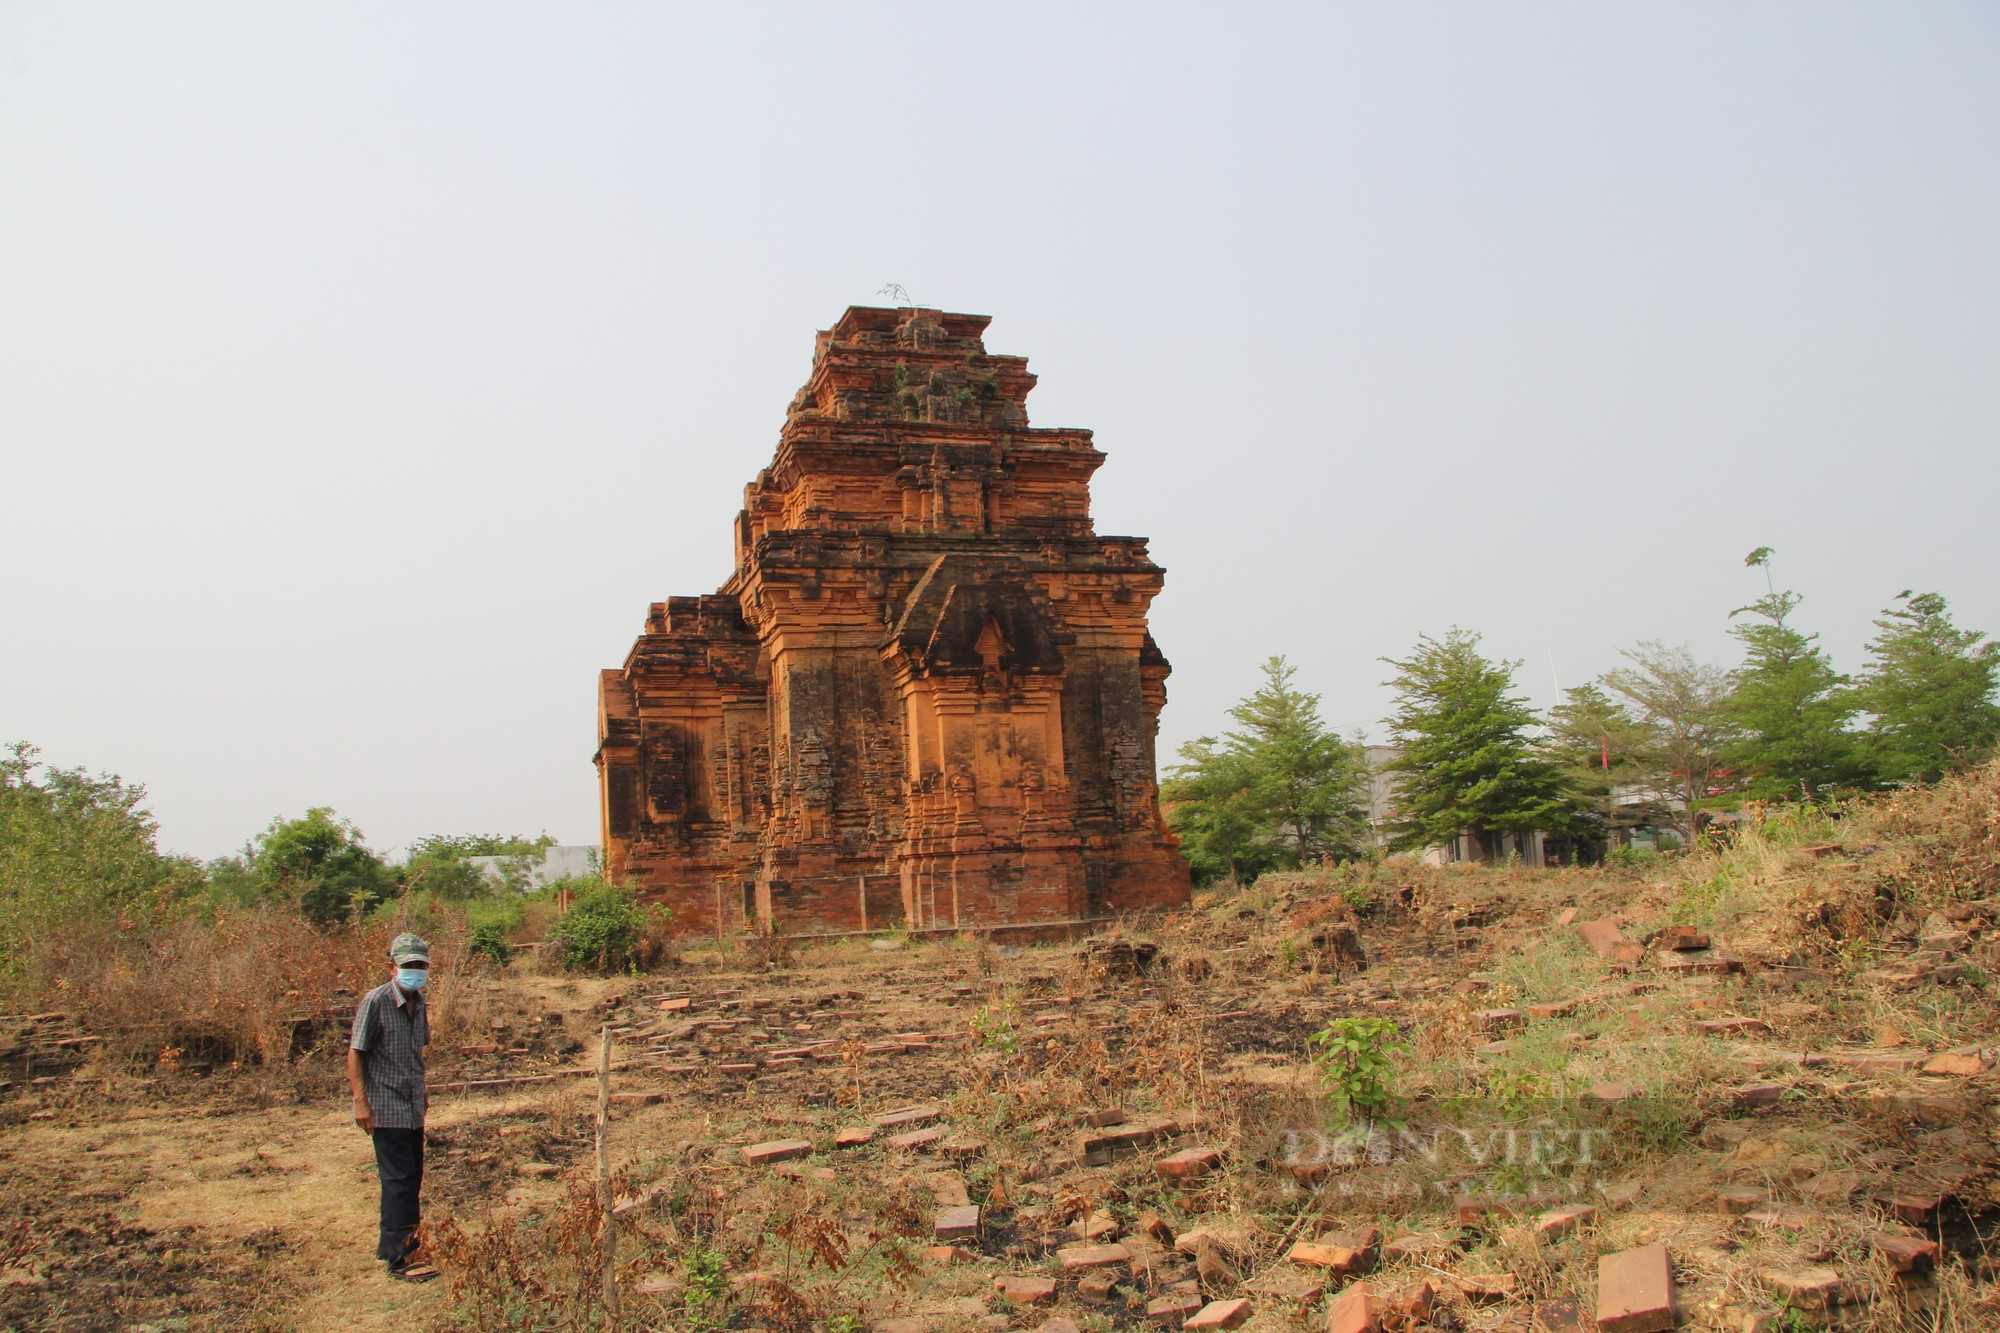 Bí ẩn tháp Chăm cổ “bị bỏ rơi” lại là nơi lưu giữ bảo vật Quốc gia có một không hai ở Ninh Thuận - Ảnh 12.